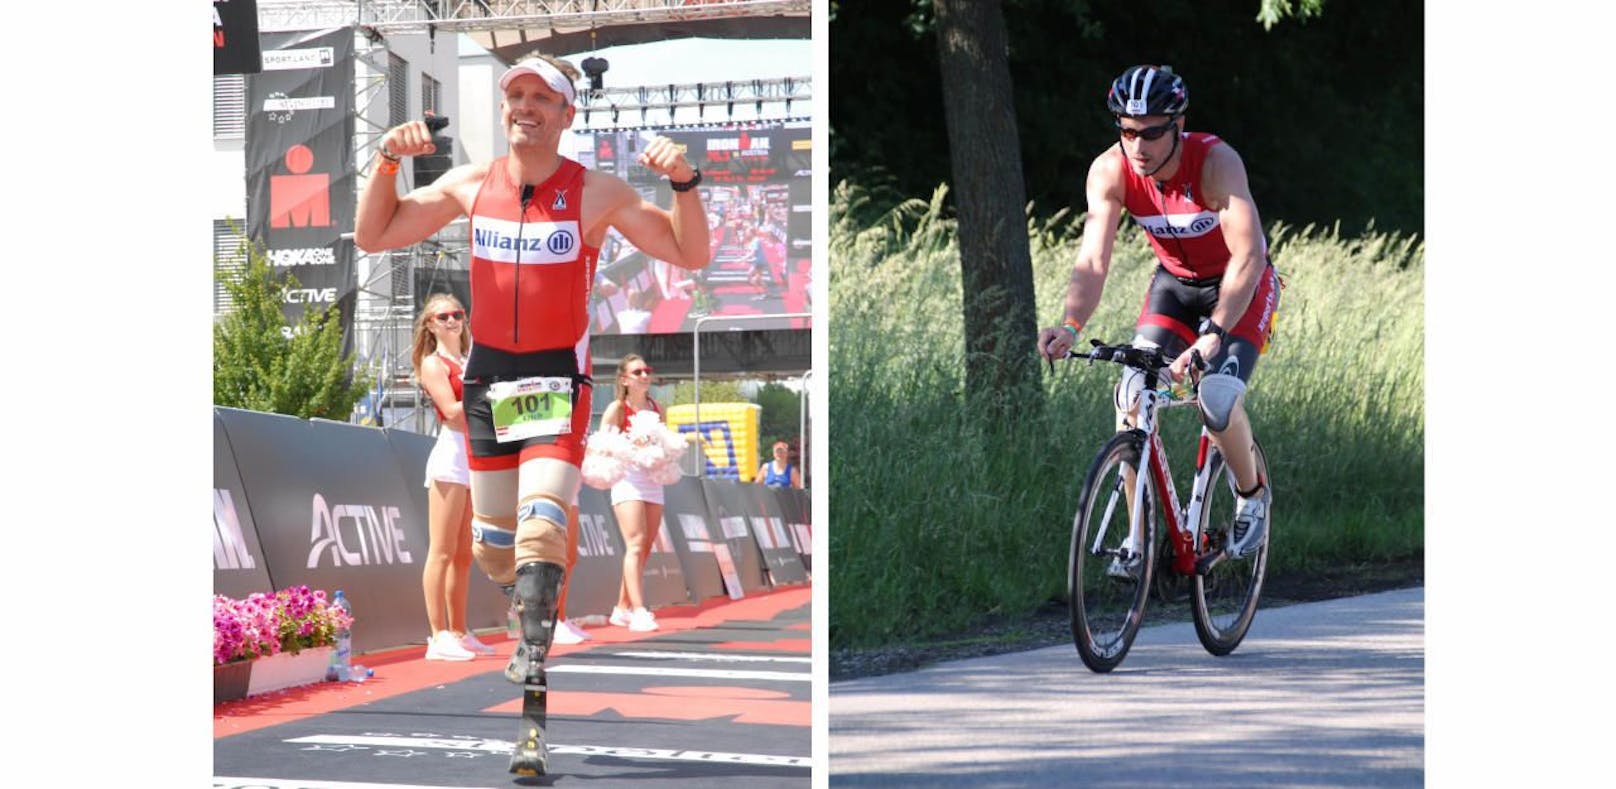 Ironman mit Prothesen: Triathlet hält nichts auf